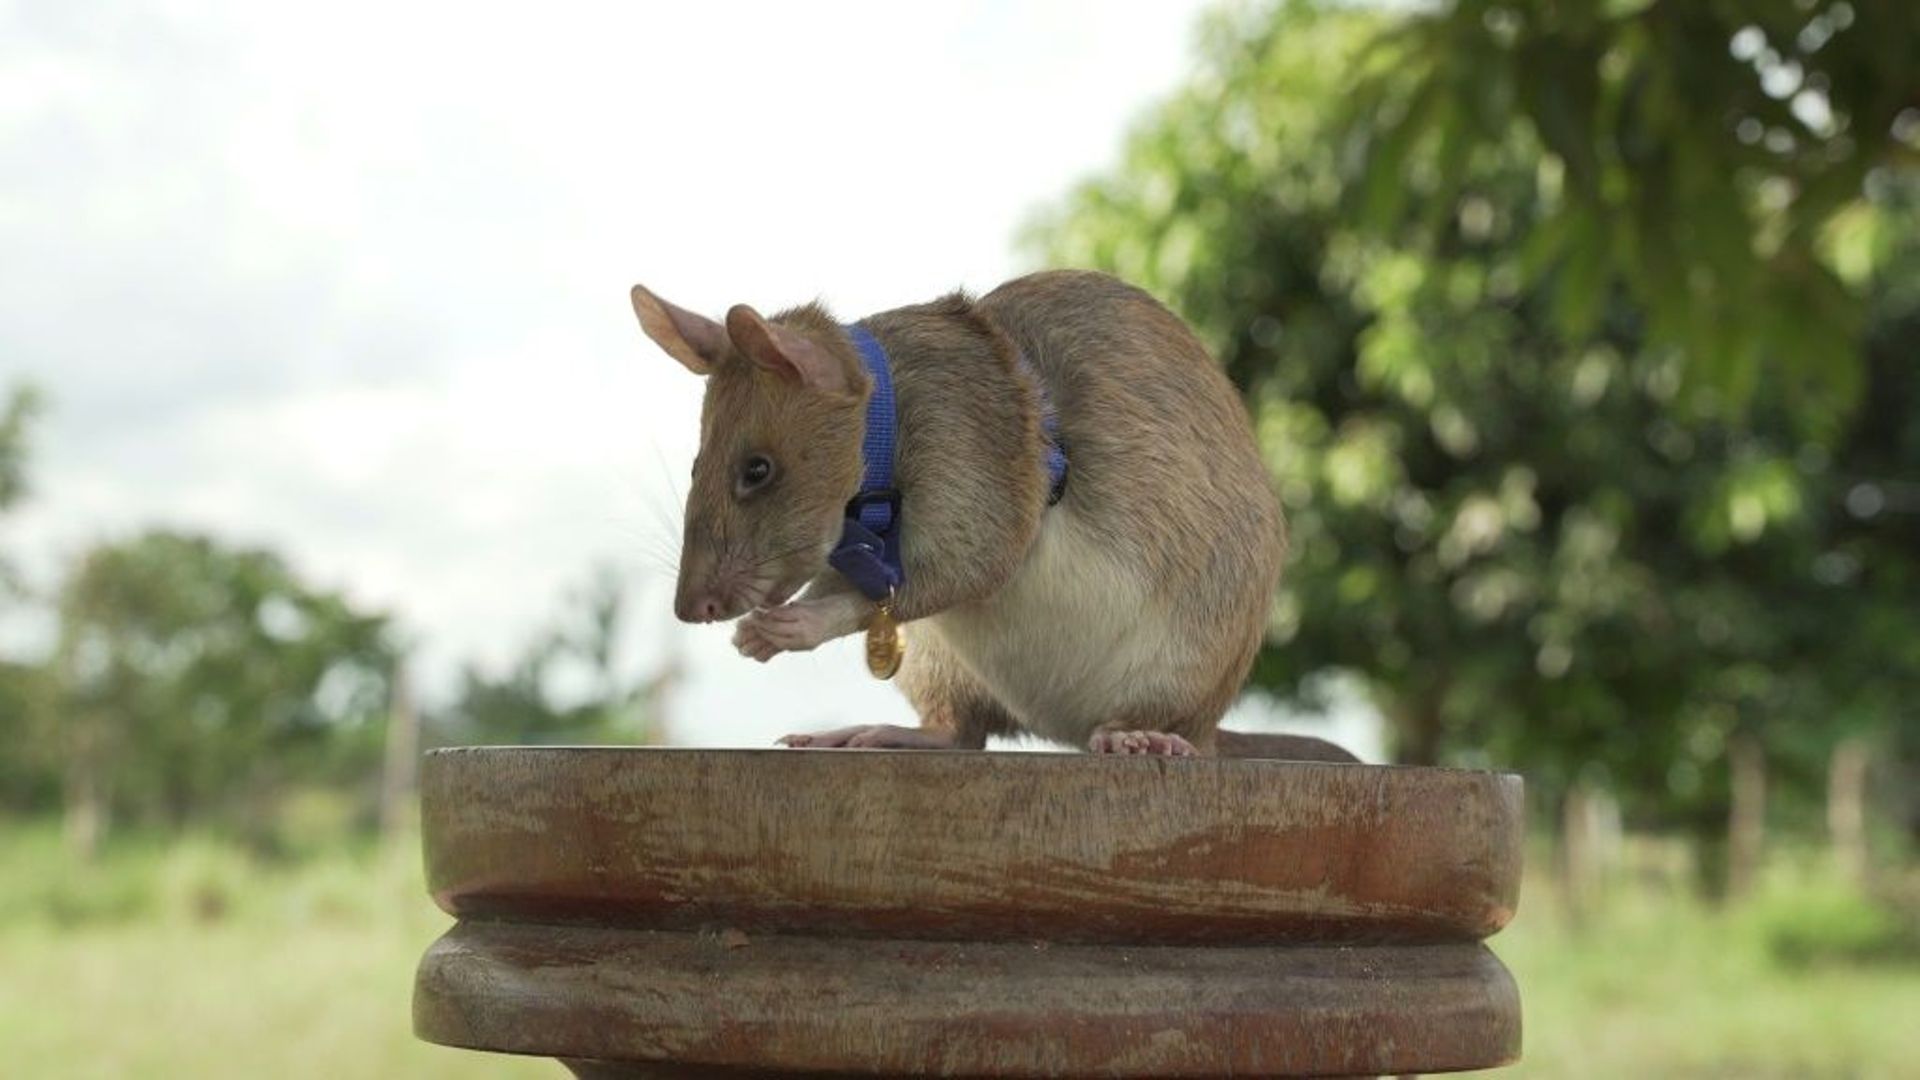 Photo non datée de Magawa, un rat africain géant détecteur de mines au Cambodge, fournie le 25 septembre 2020 par l'association britannique de protection des animaux PDSA qui lui a décerné une médaille d'or pour sa bravoure